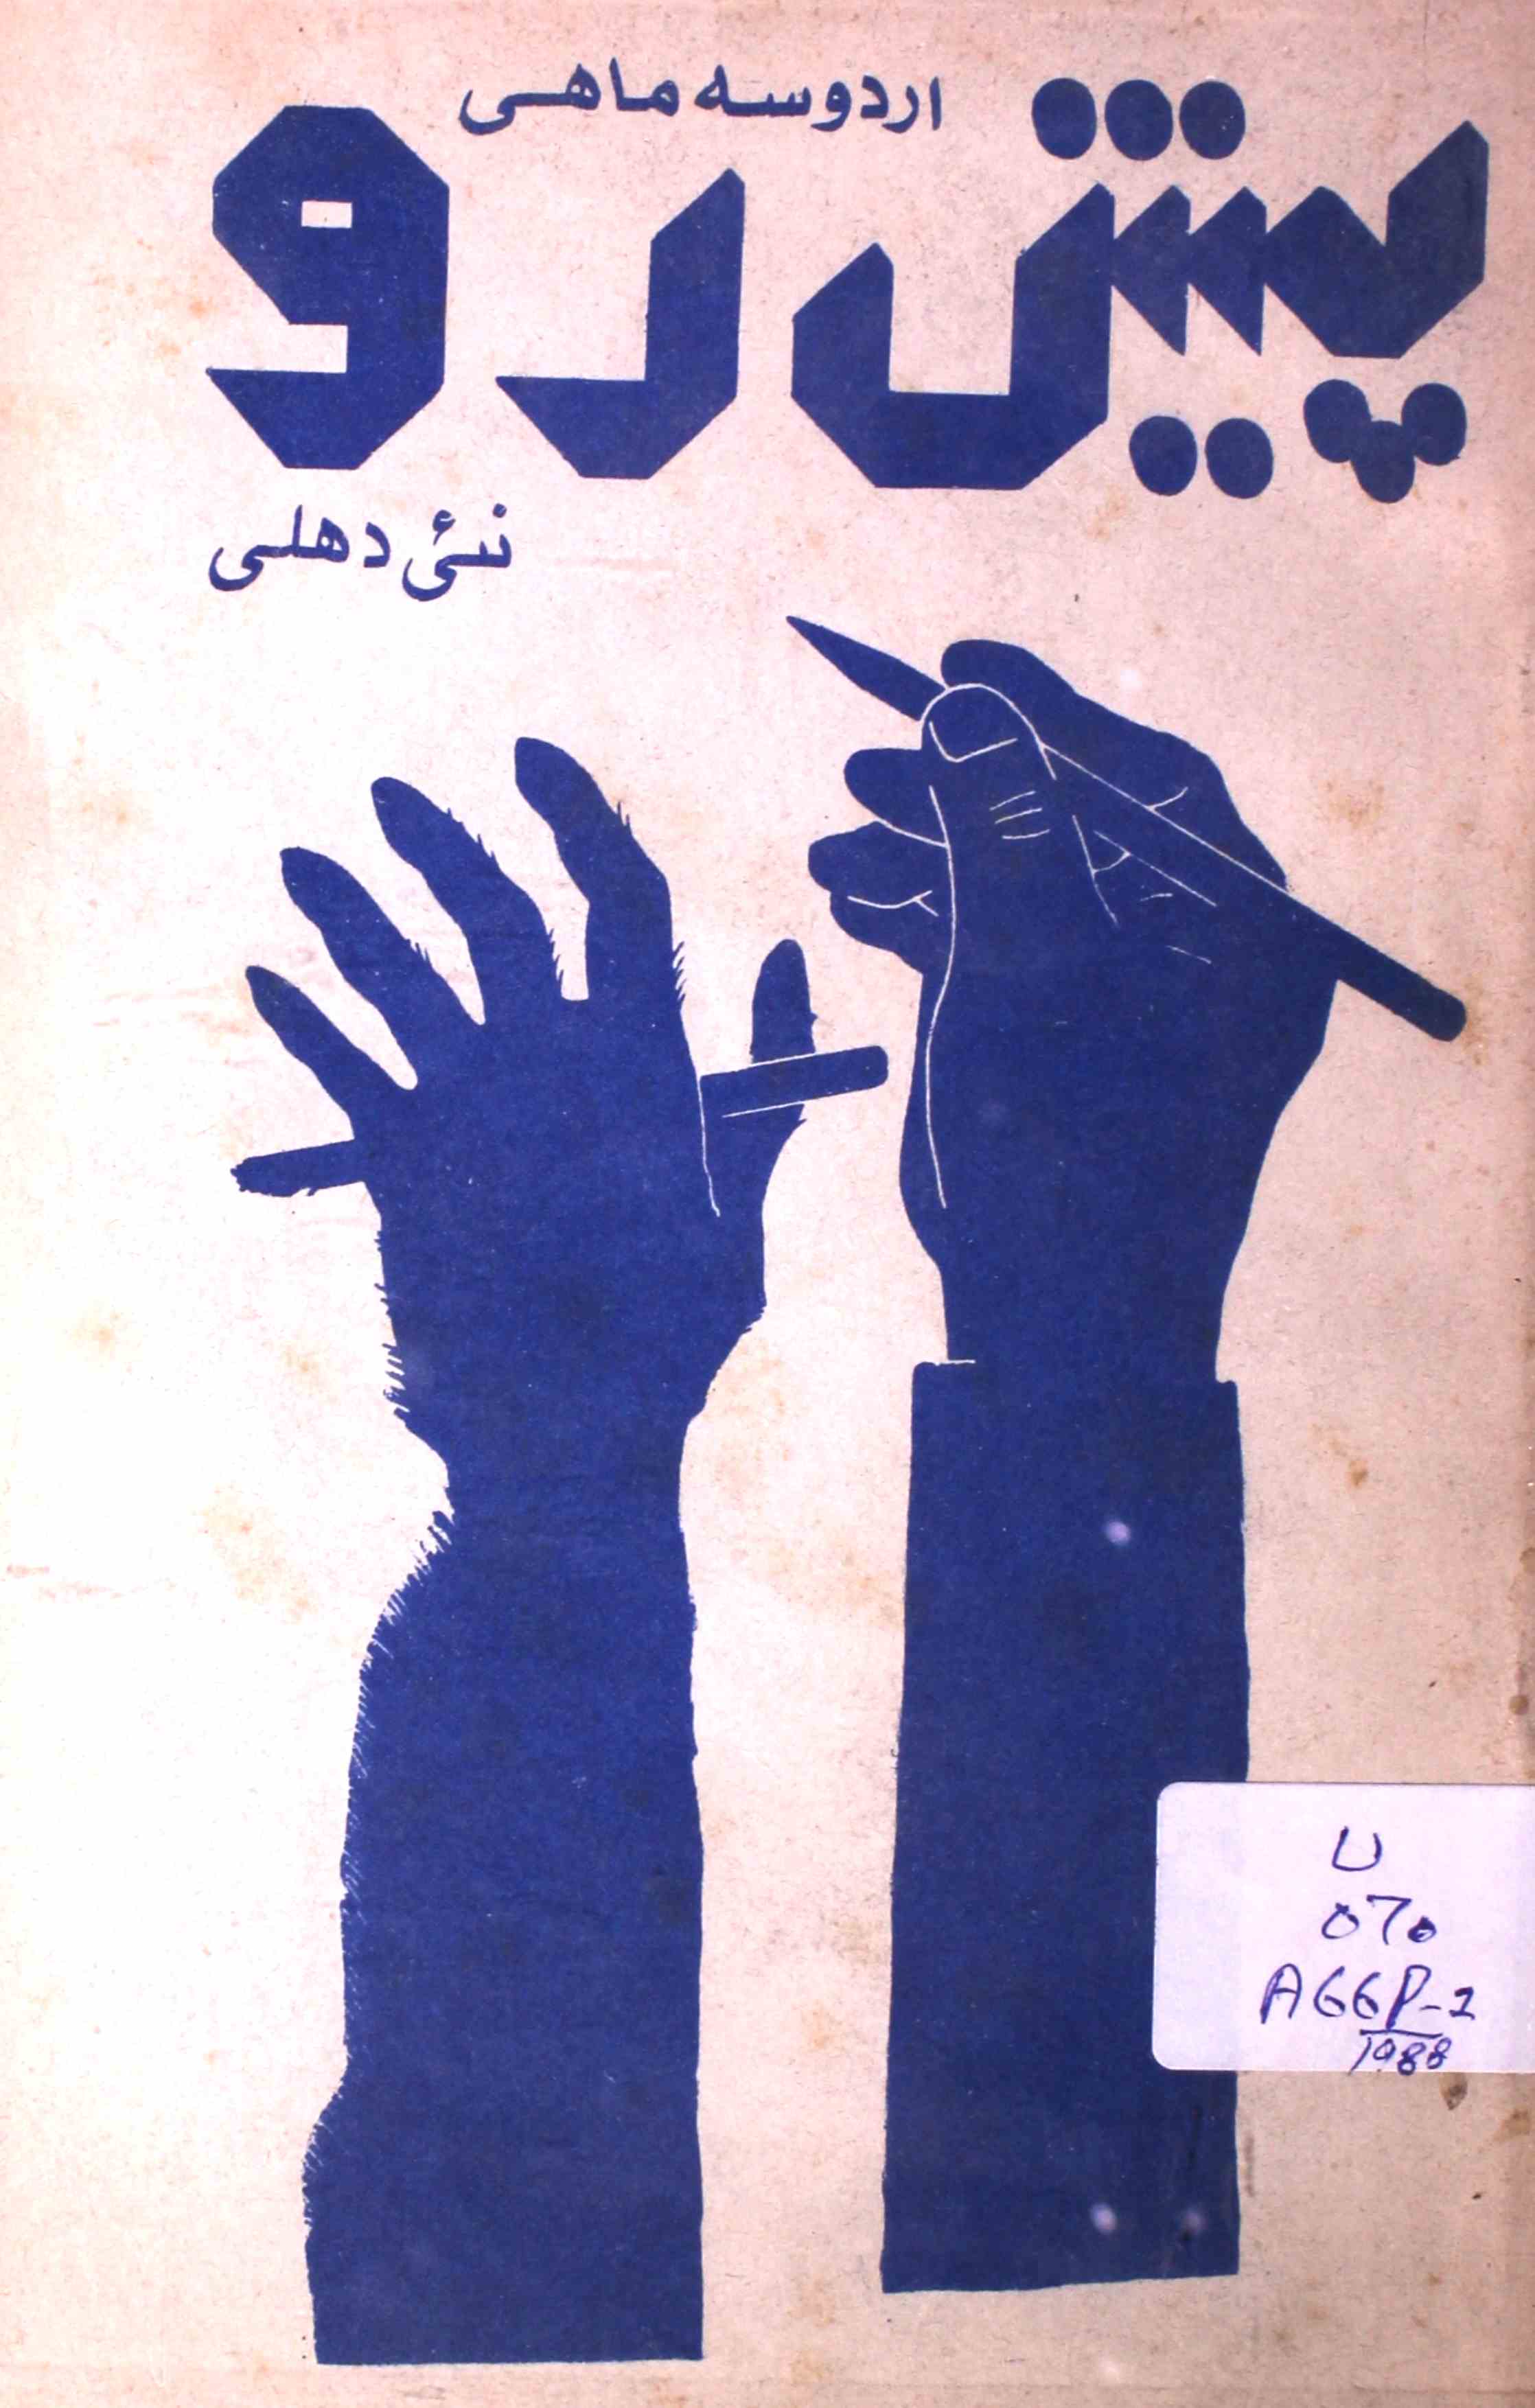 پیش رو- Magazine by انوار عالم, انور پاشا, نسیم اختر ایاز 